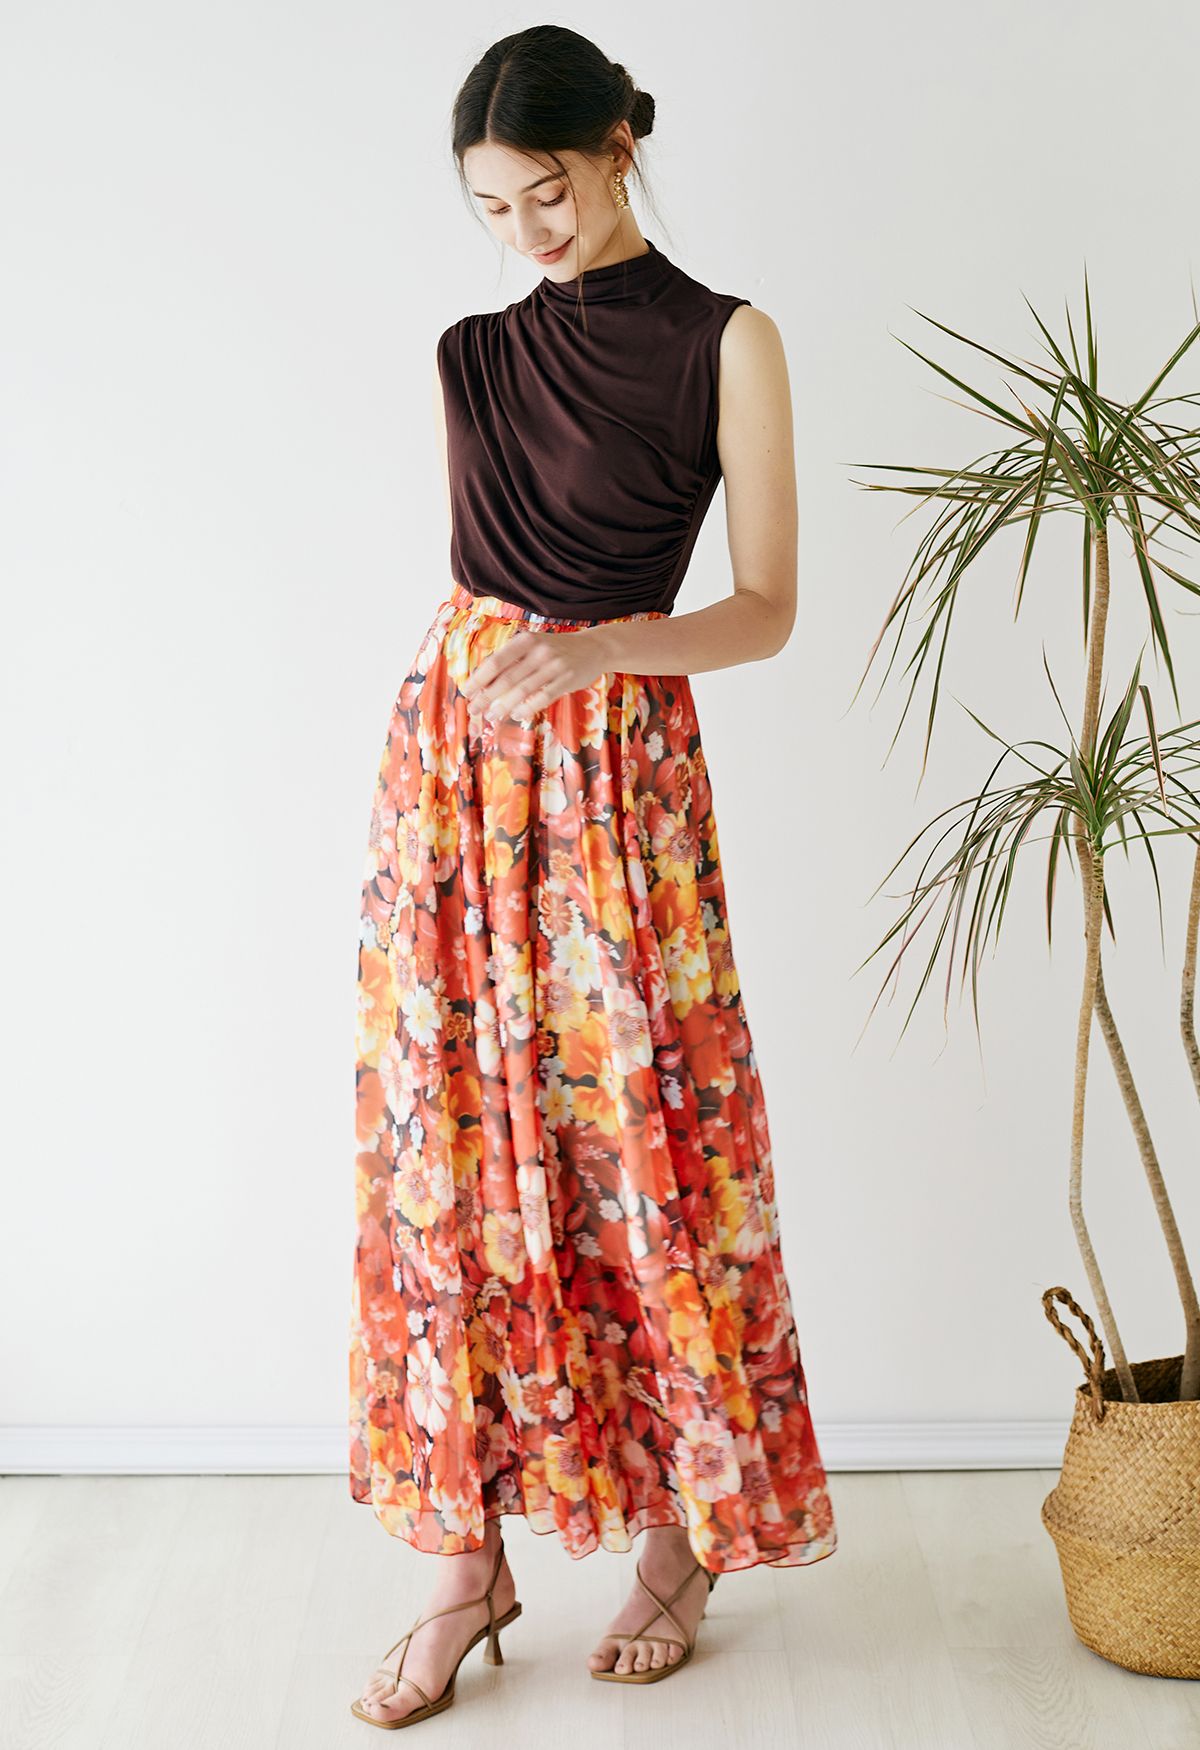 Falda larga de gasa con estampado de flores rojizas